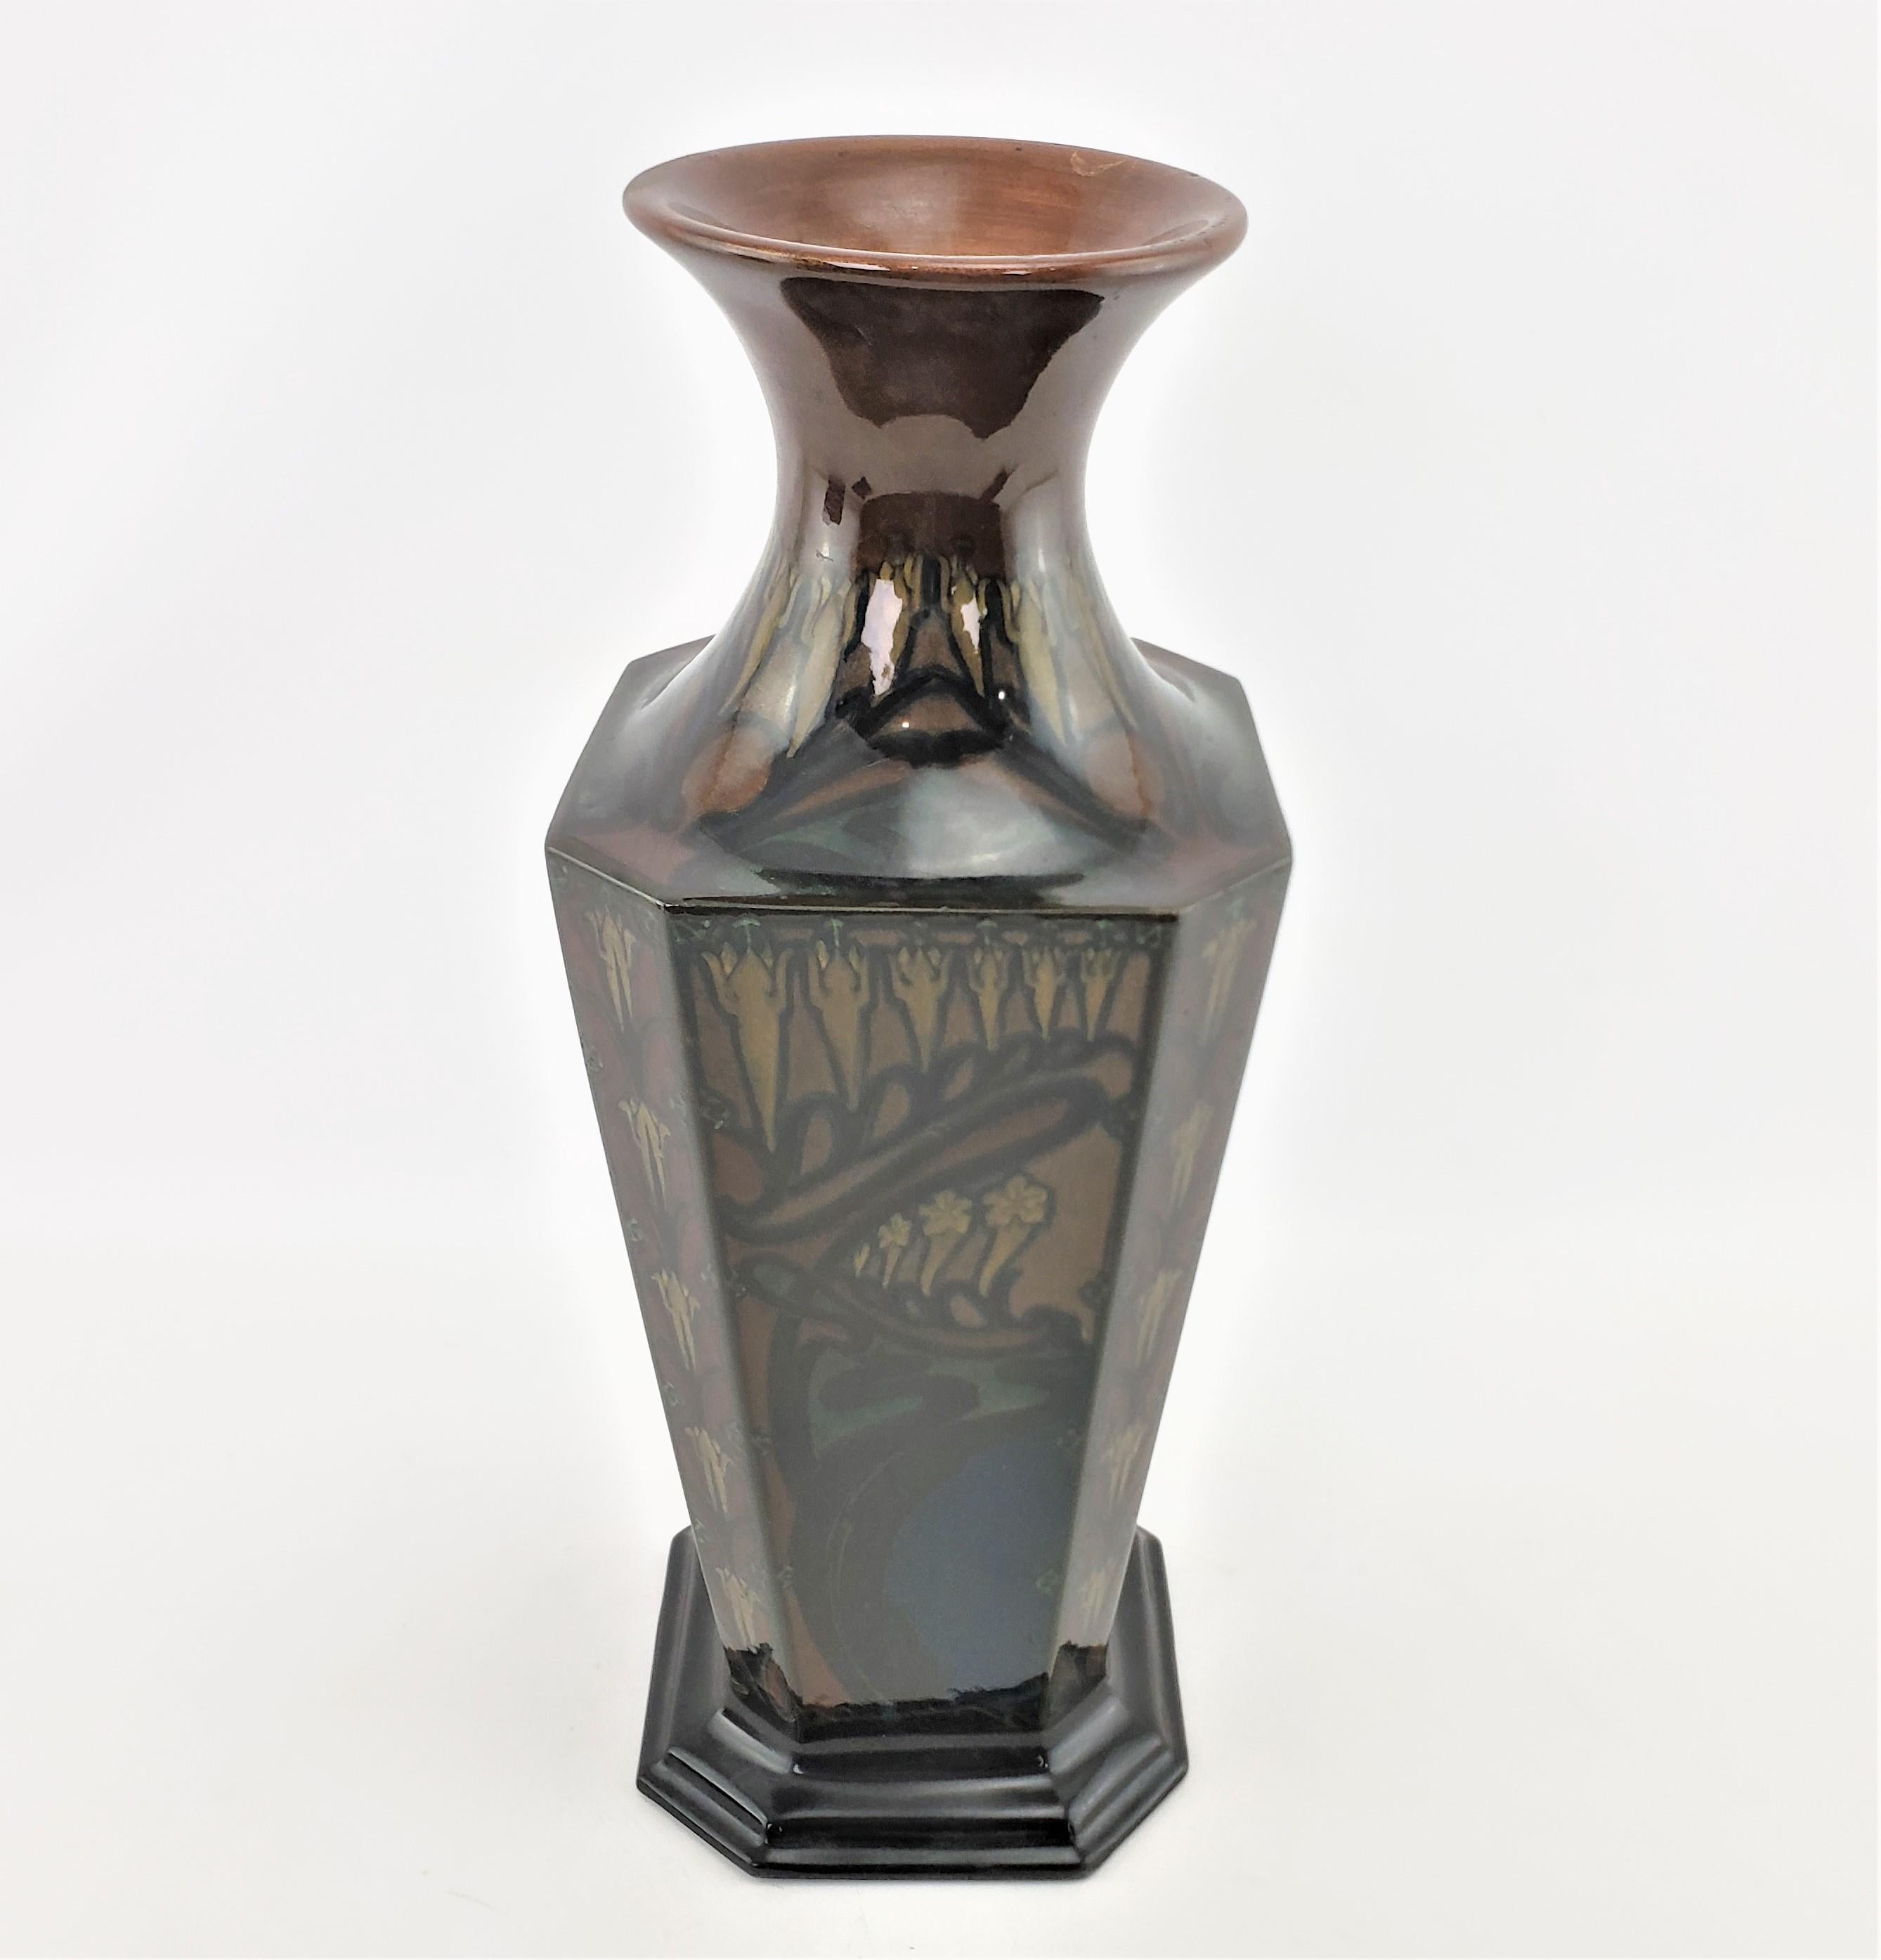 Large Antique Art Nouveau Rozenburg Art Pottery Vase with Landscape Decoration For Sale 2